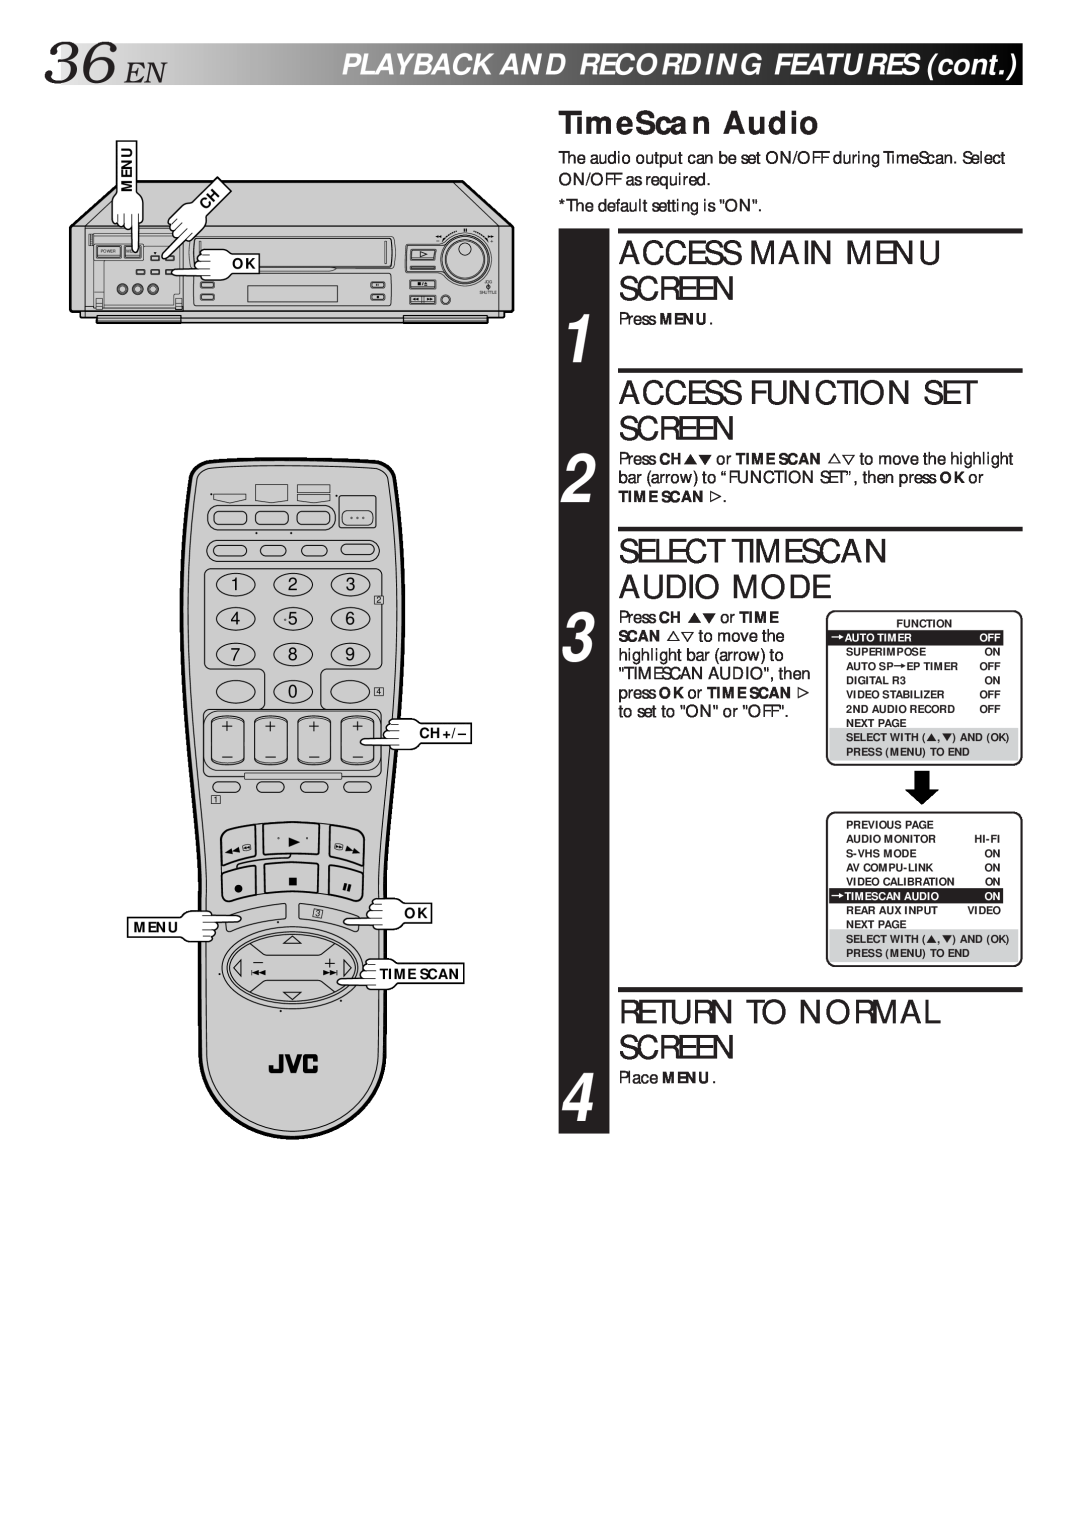 JVC HR-S7500U manual 36EN, Access Main Menu Screen, Access Function Set Screen, Select Timescan Audio Mode, TimeScan Audio 